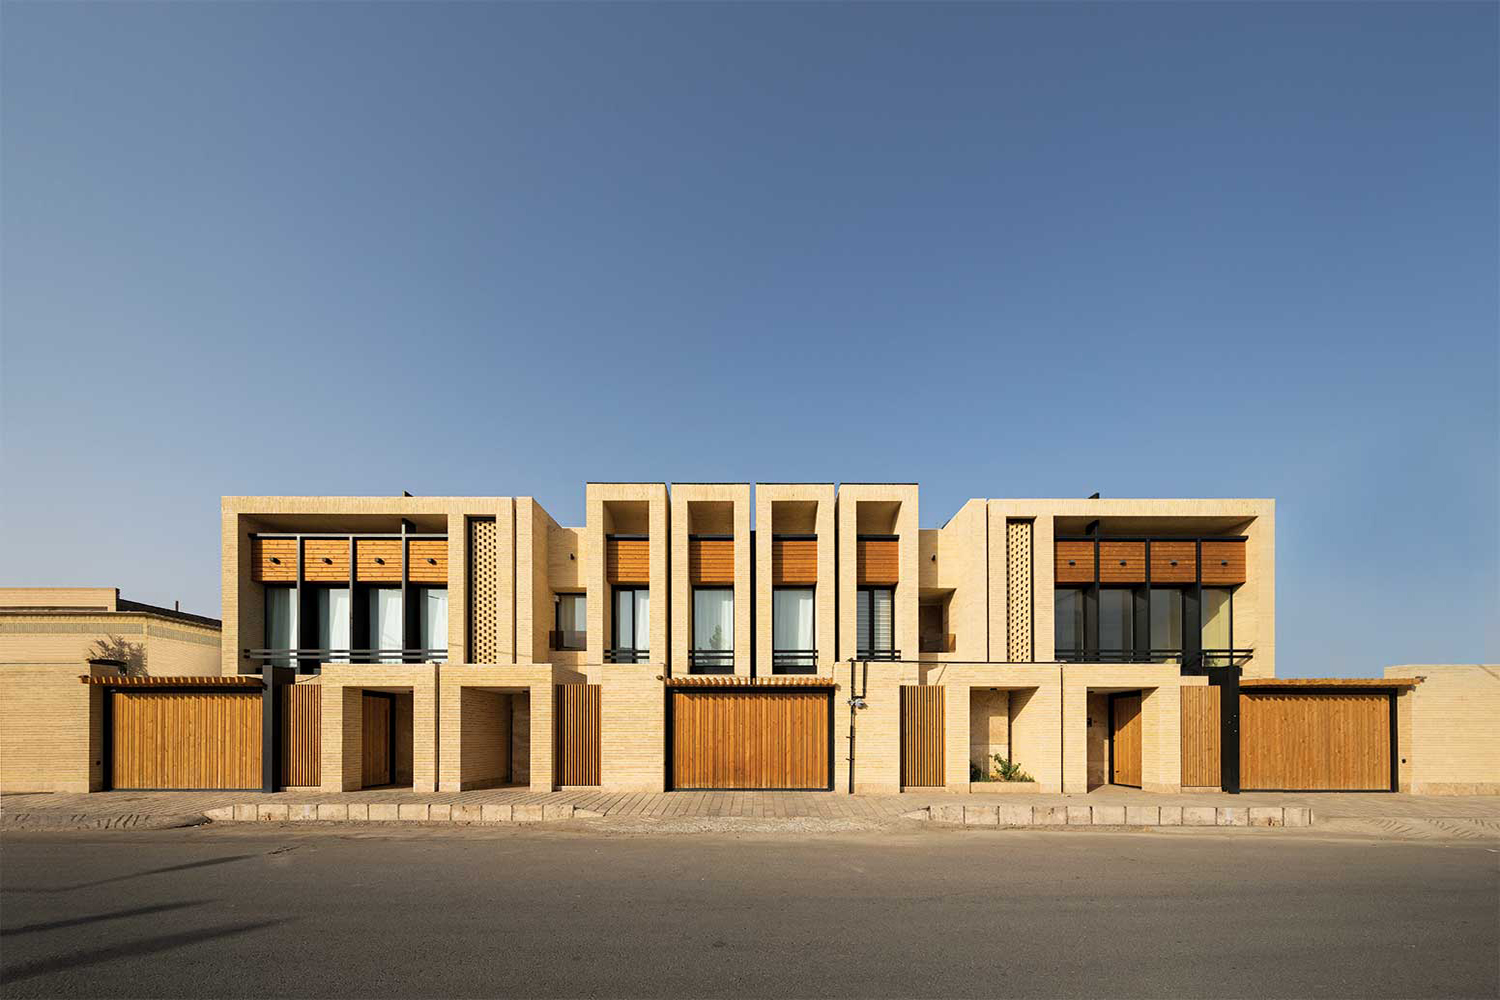 سه خانه، یک خانواده جامعه معماران ایران